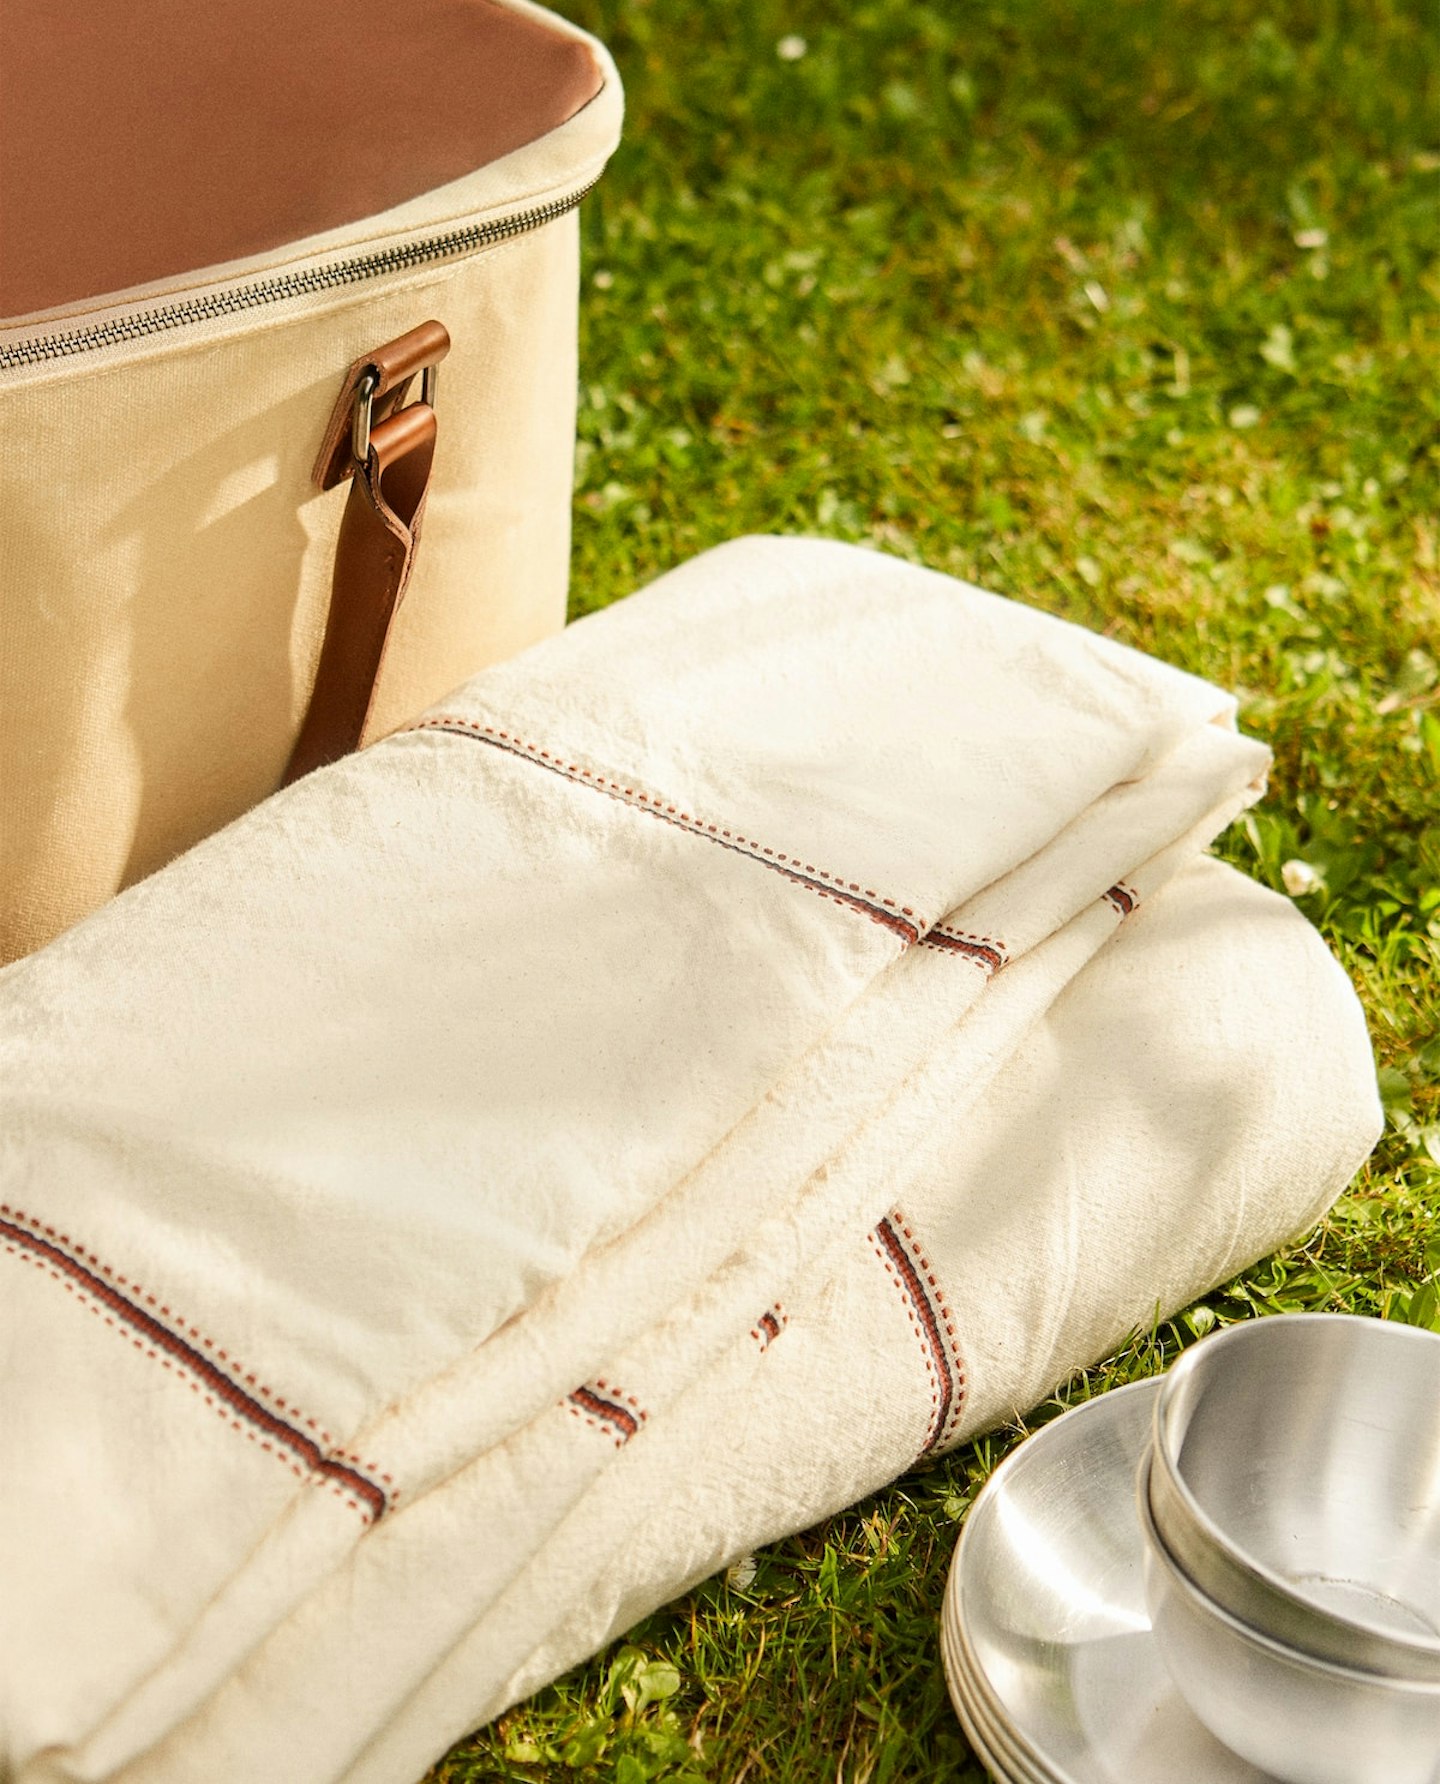 Zara Home, Camping Picnic Blanket, £69.99